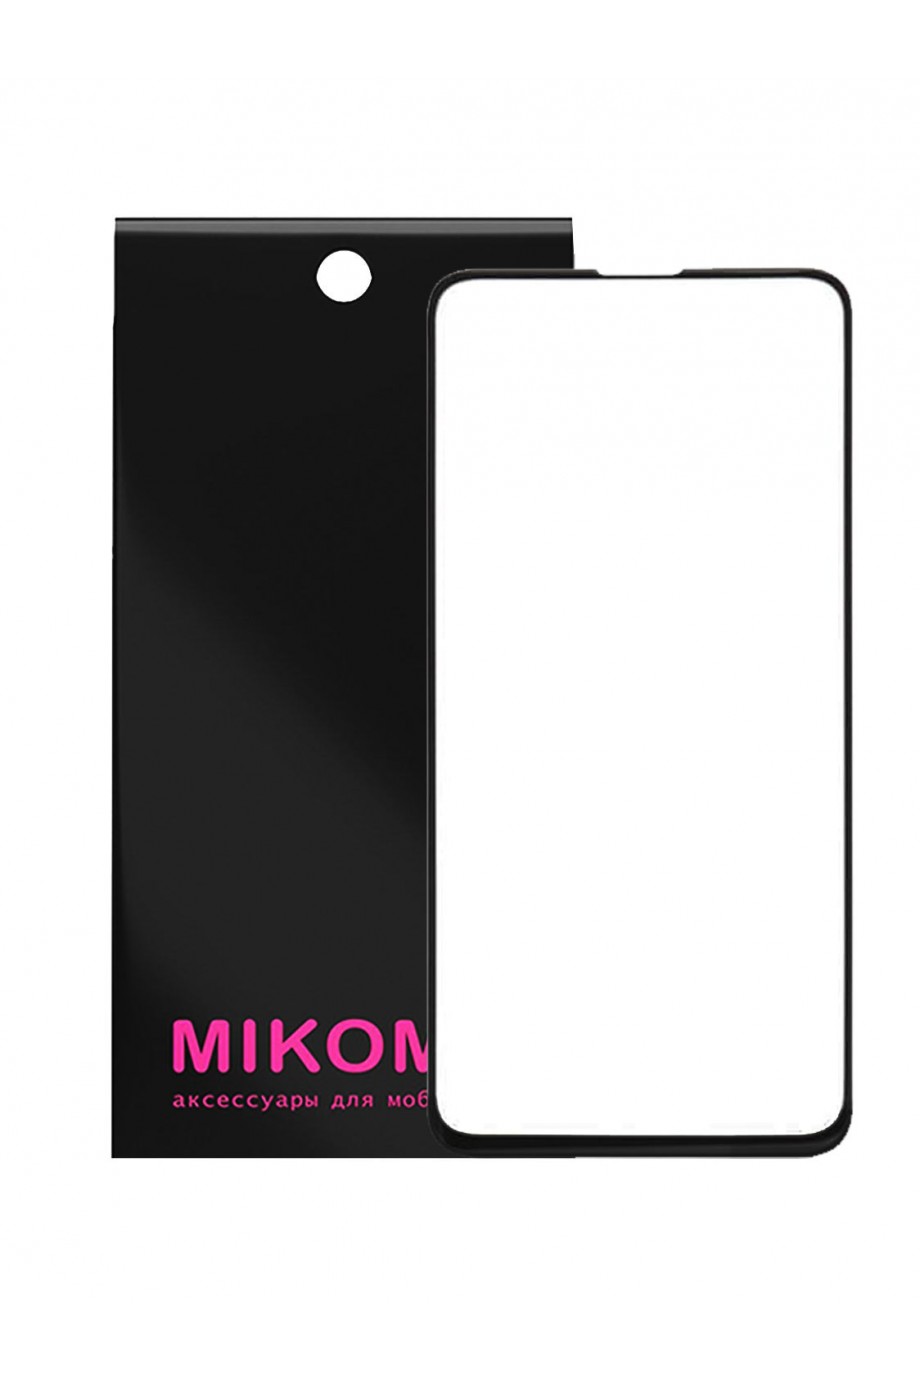 Защитное стекло 3D Mikomo для Samsung Galaxy S10e, черная рамка, полный клей